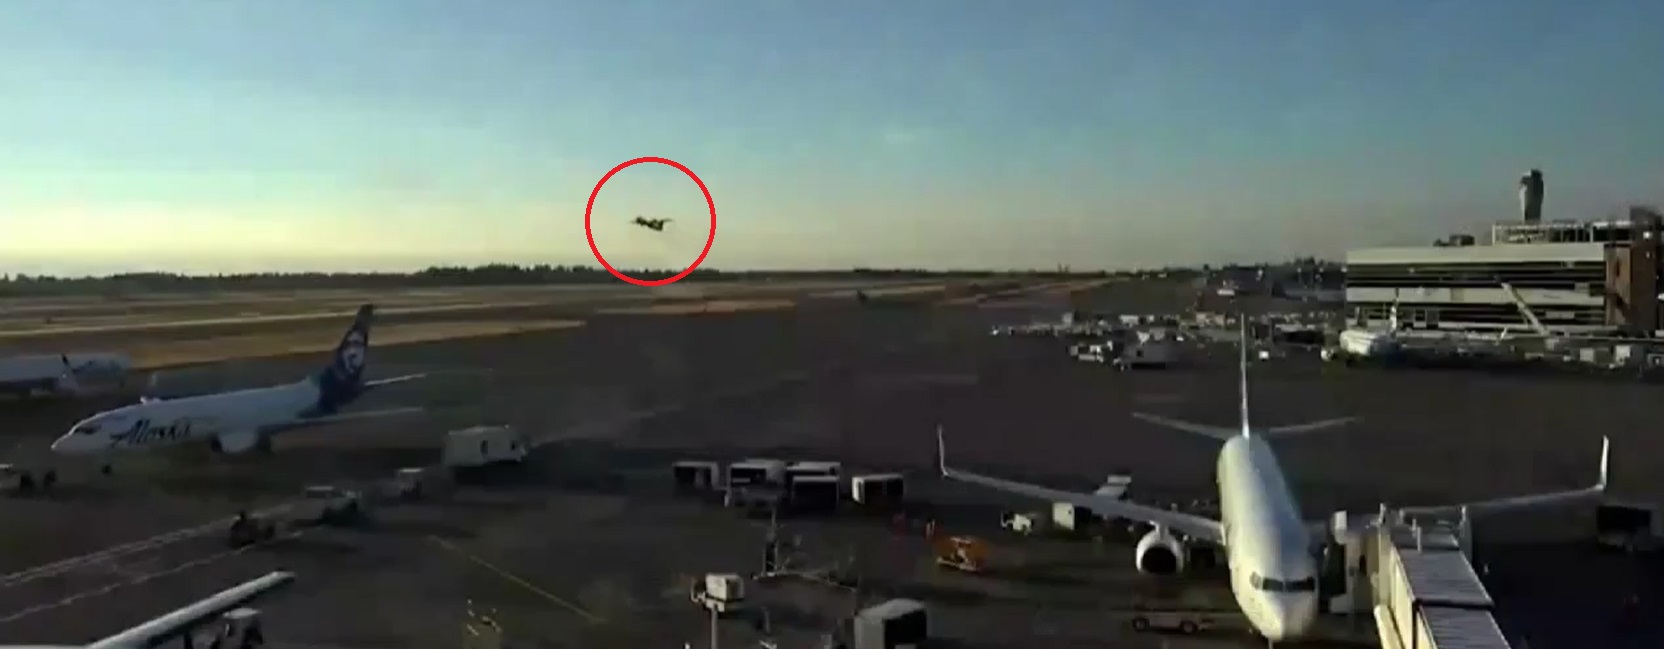 فيديو صادم.. لحظة سرقة طائرة من مطار أمريكي